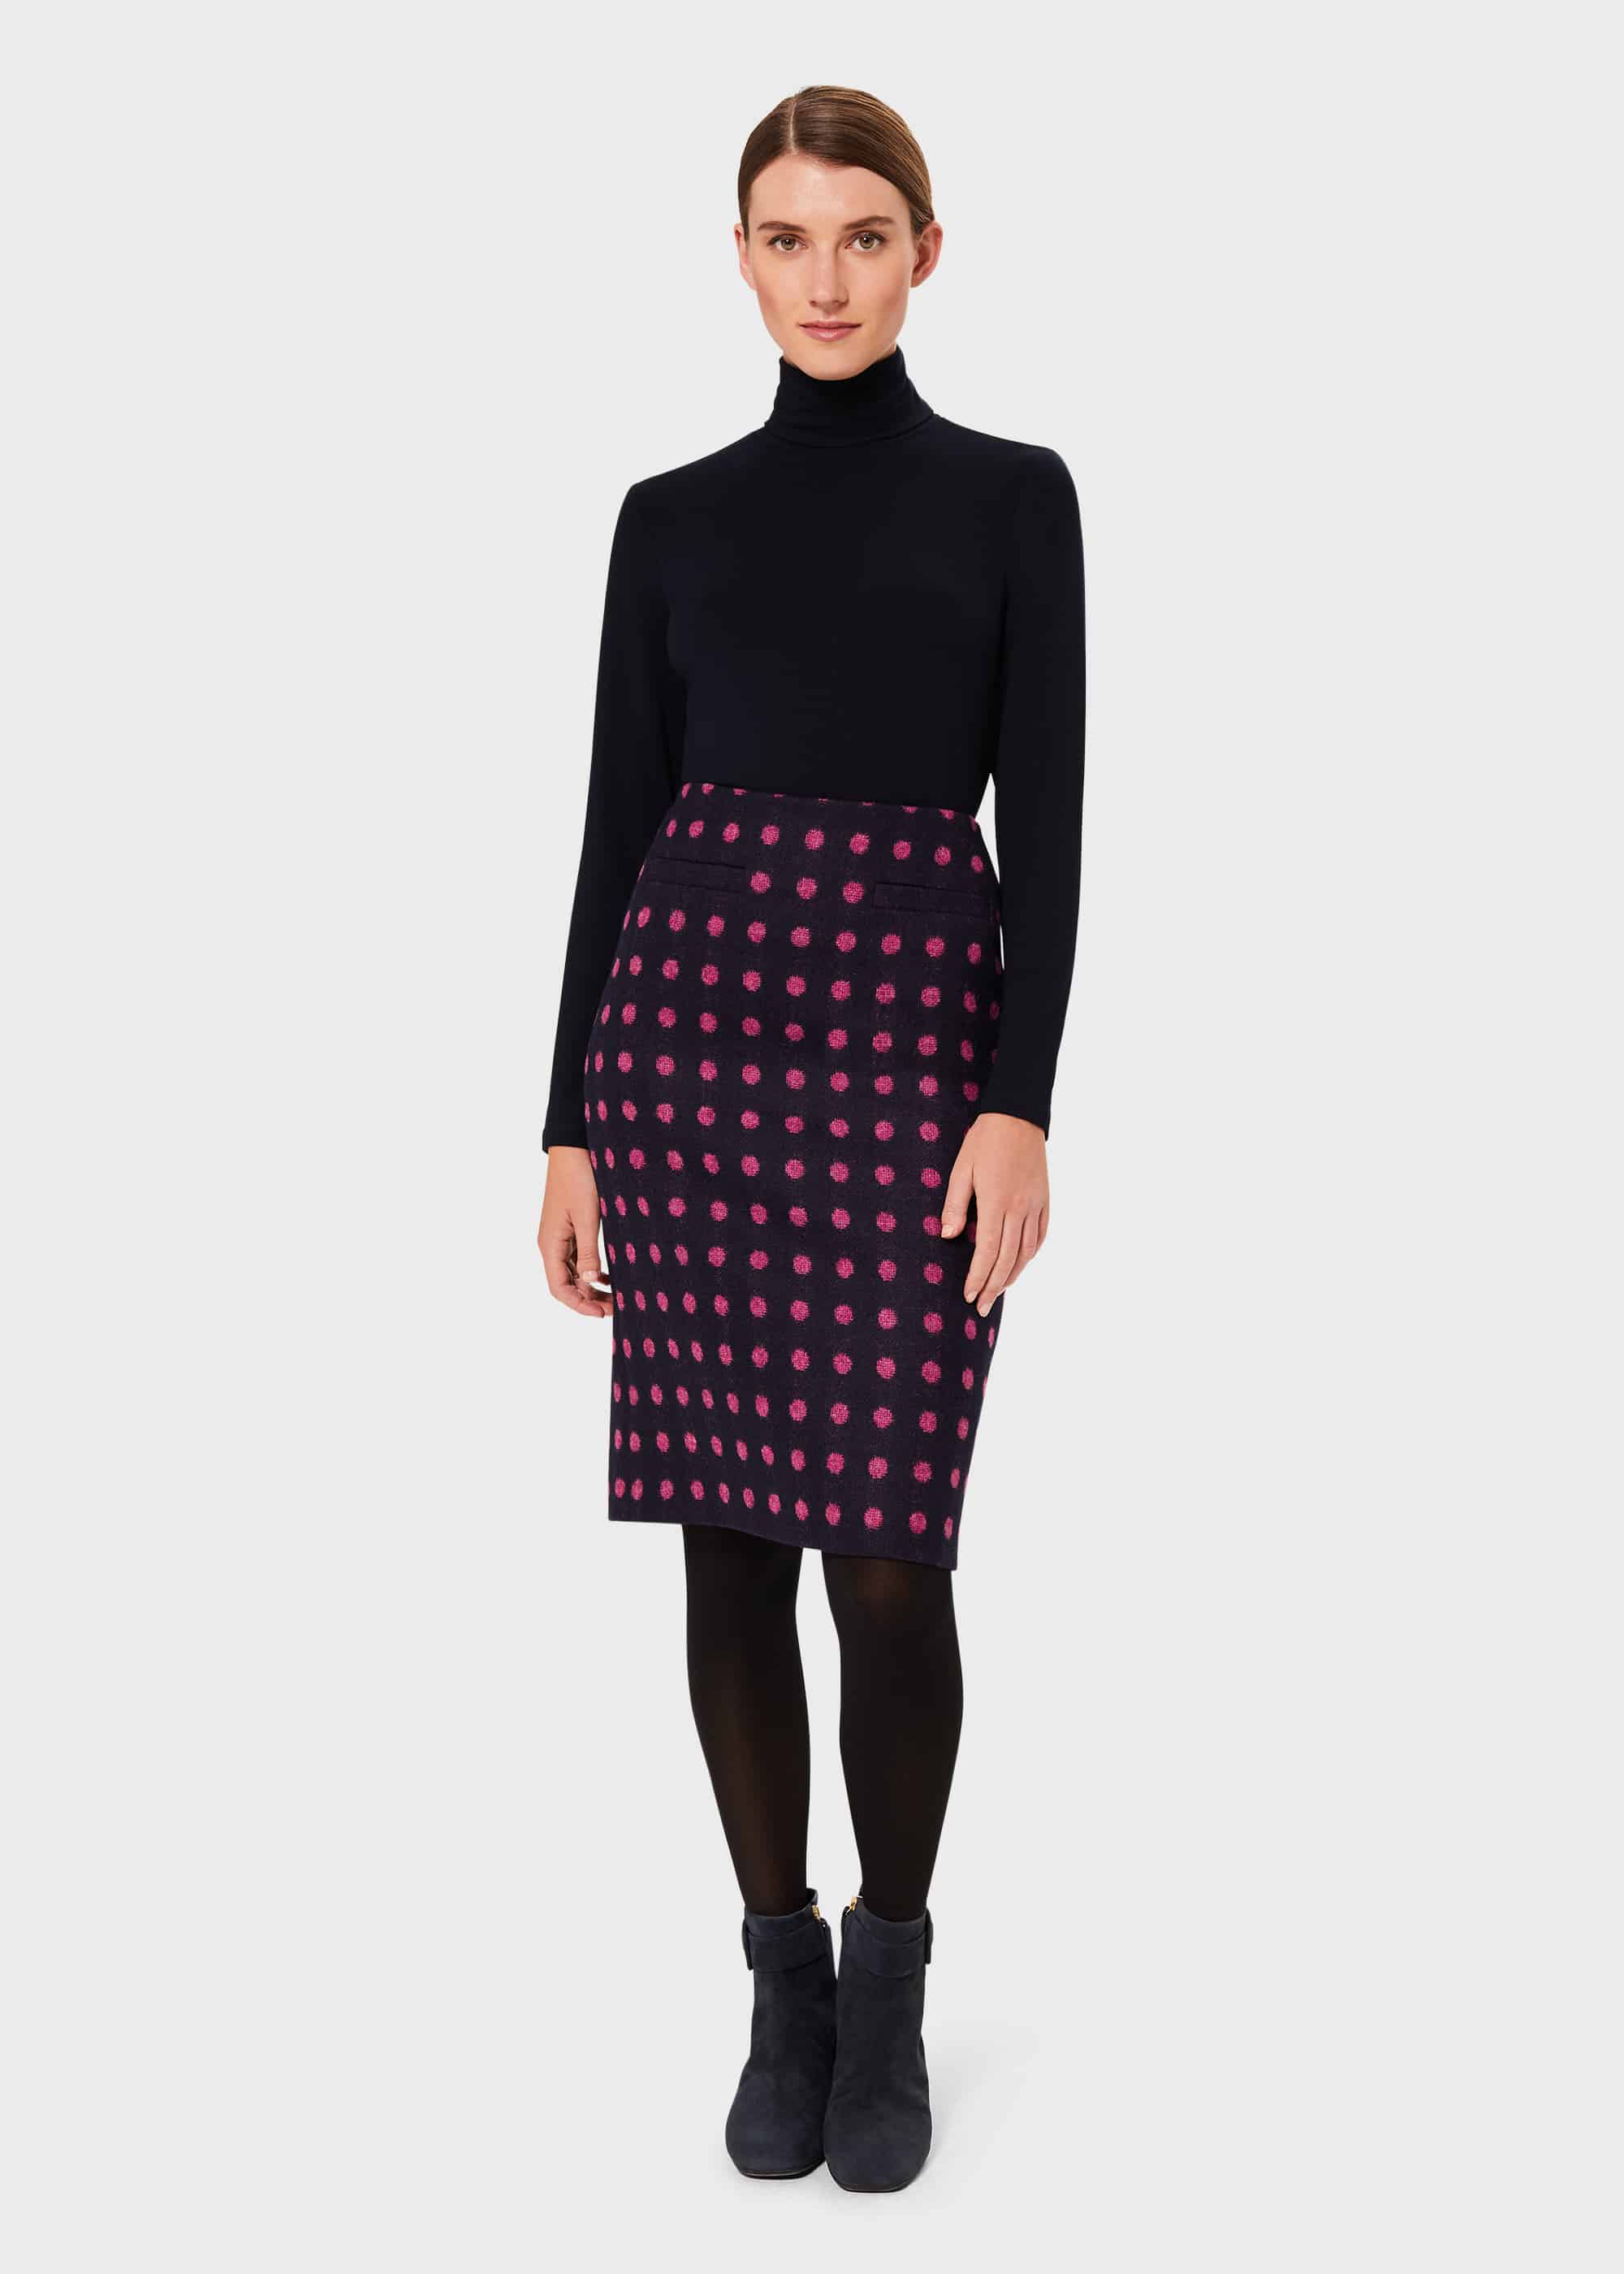 Hobbs Women's Valerie Wool Spot Pencil Skirt - Navy Pink